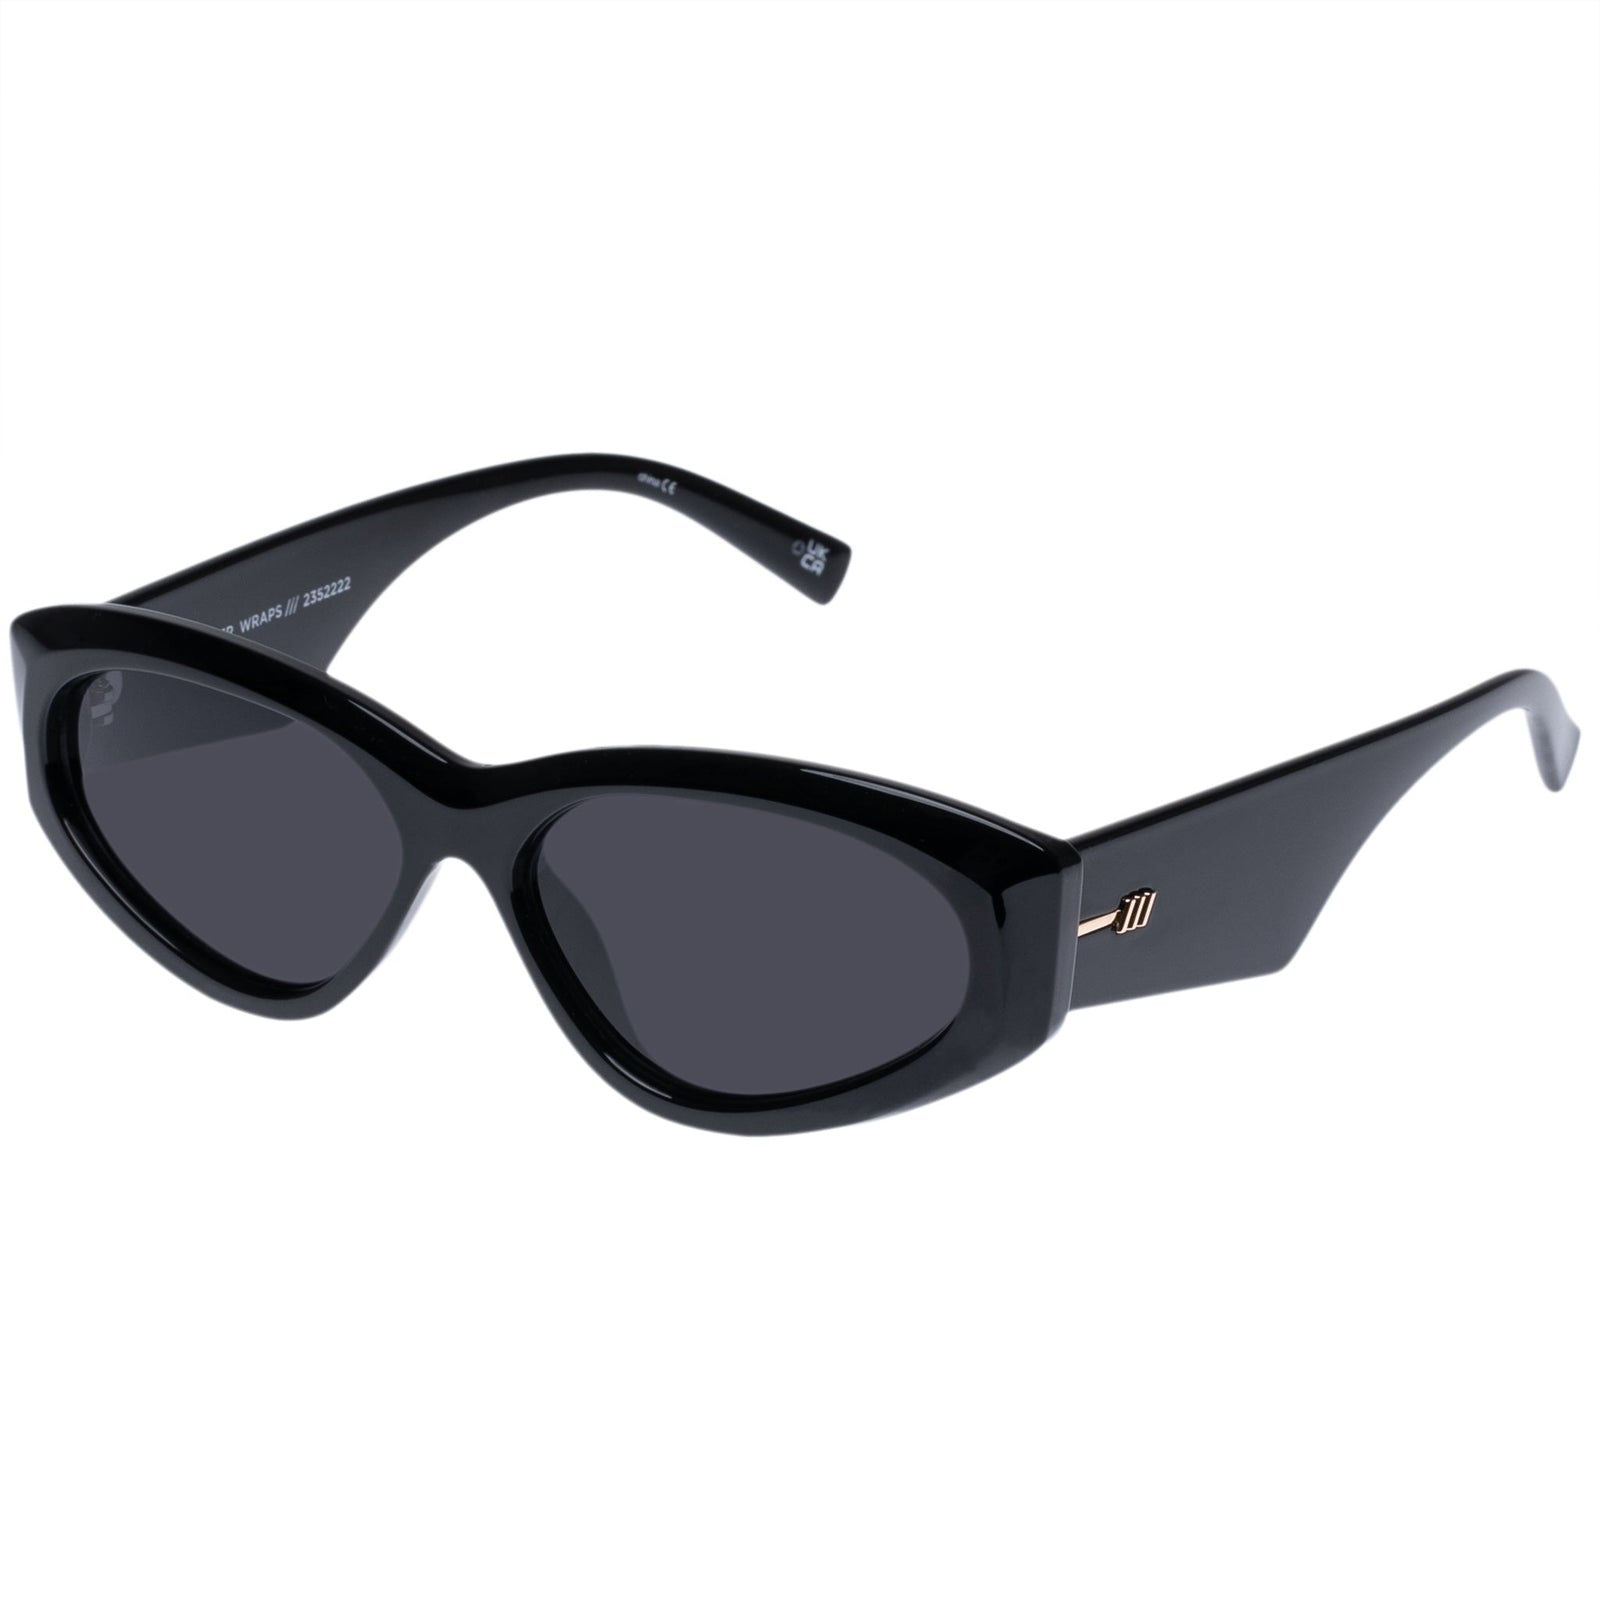 Under Wraps Black Uni-Sex Wrap Le Specs Sunglasses 